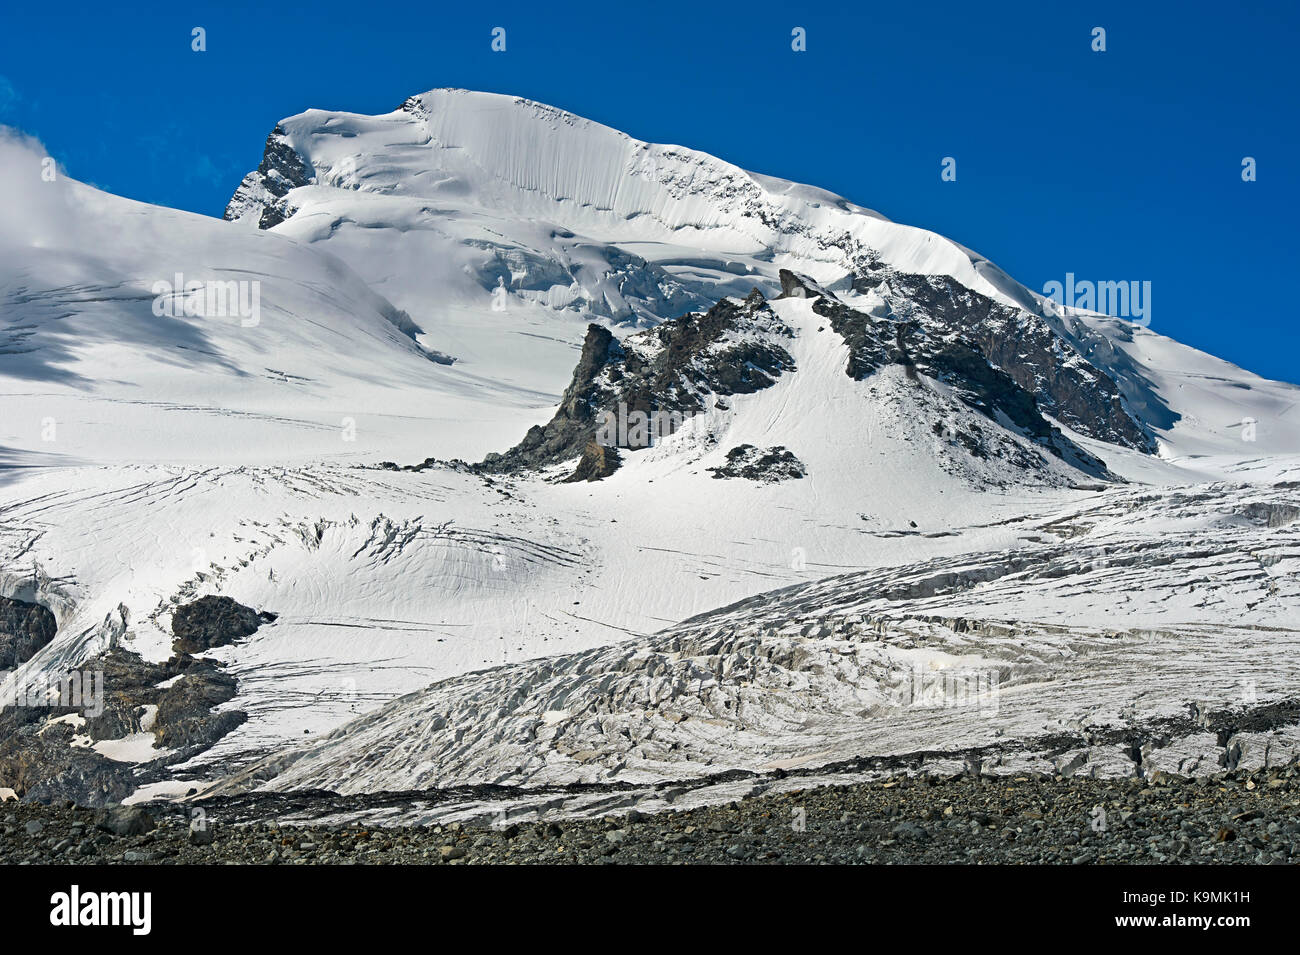 Strahlhorn summit, Saas-Fee, Valais, Switzerland Stock Photo